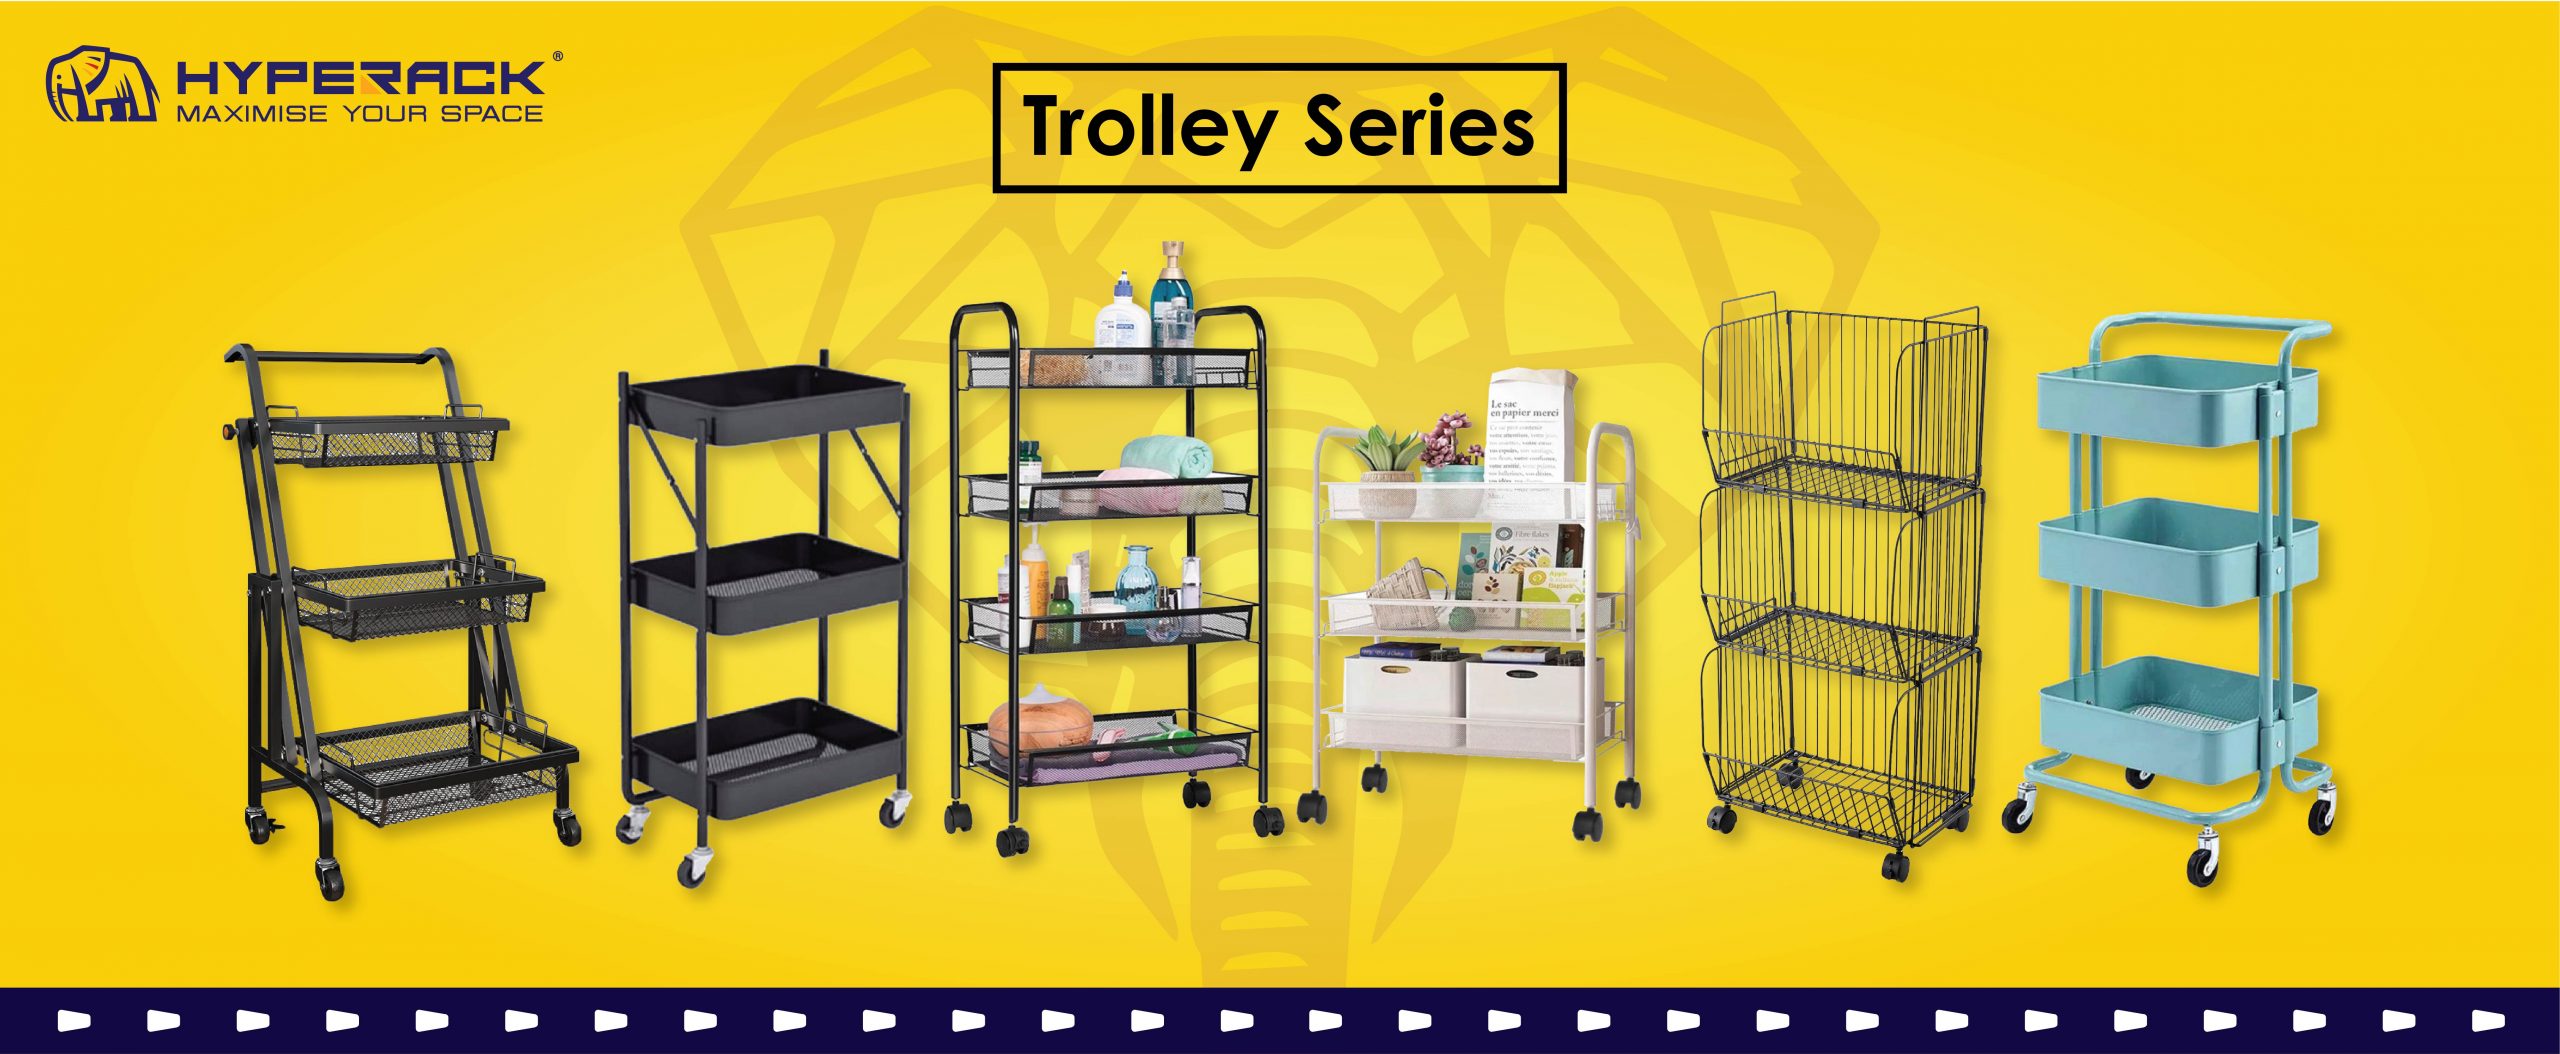  Trolley Series 